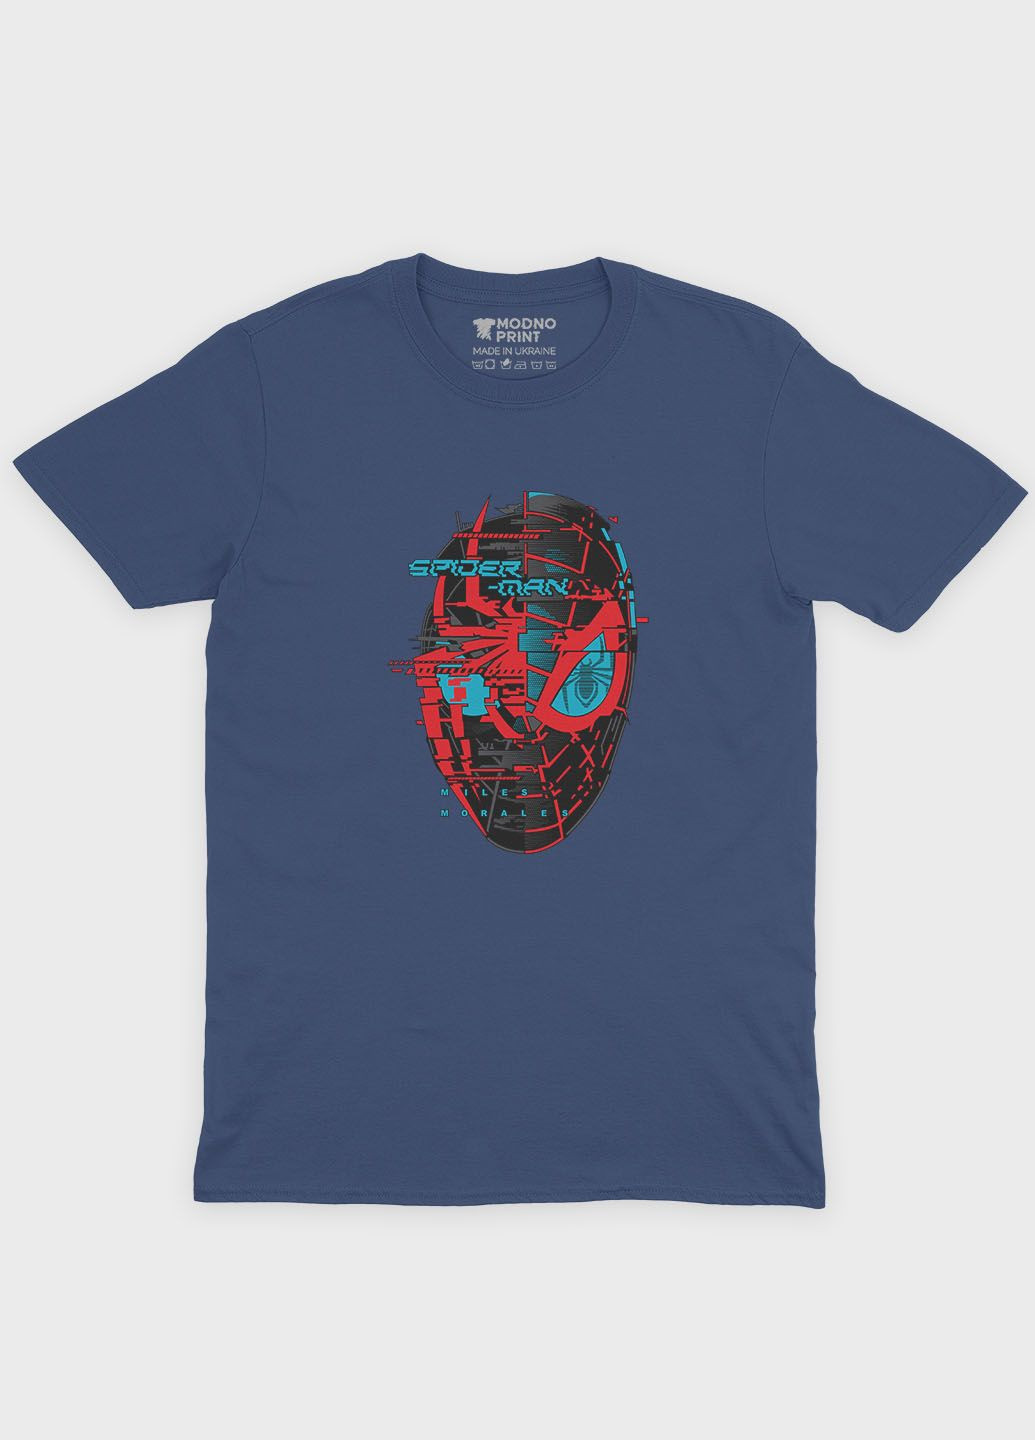 Темно-синяя демисезонная футболка для мальчика с принтом супергероя - человек-паук (ts001-1-nav-006-014-034-b) Modno